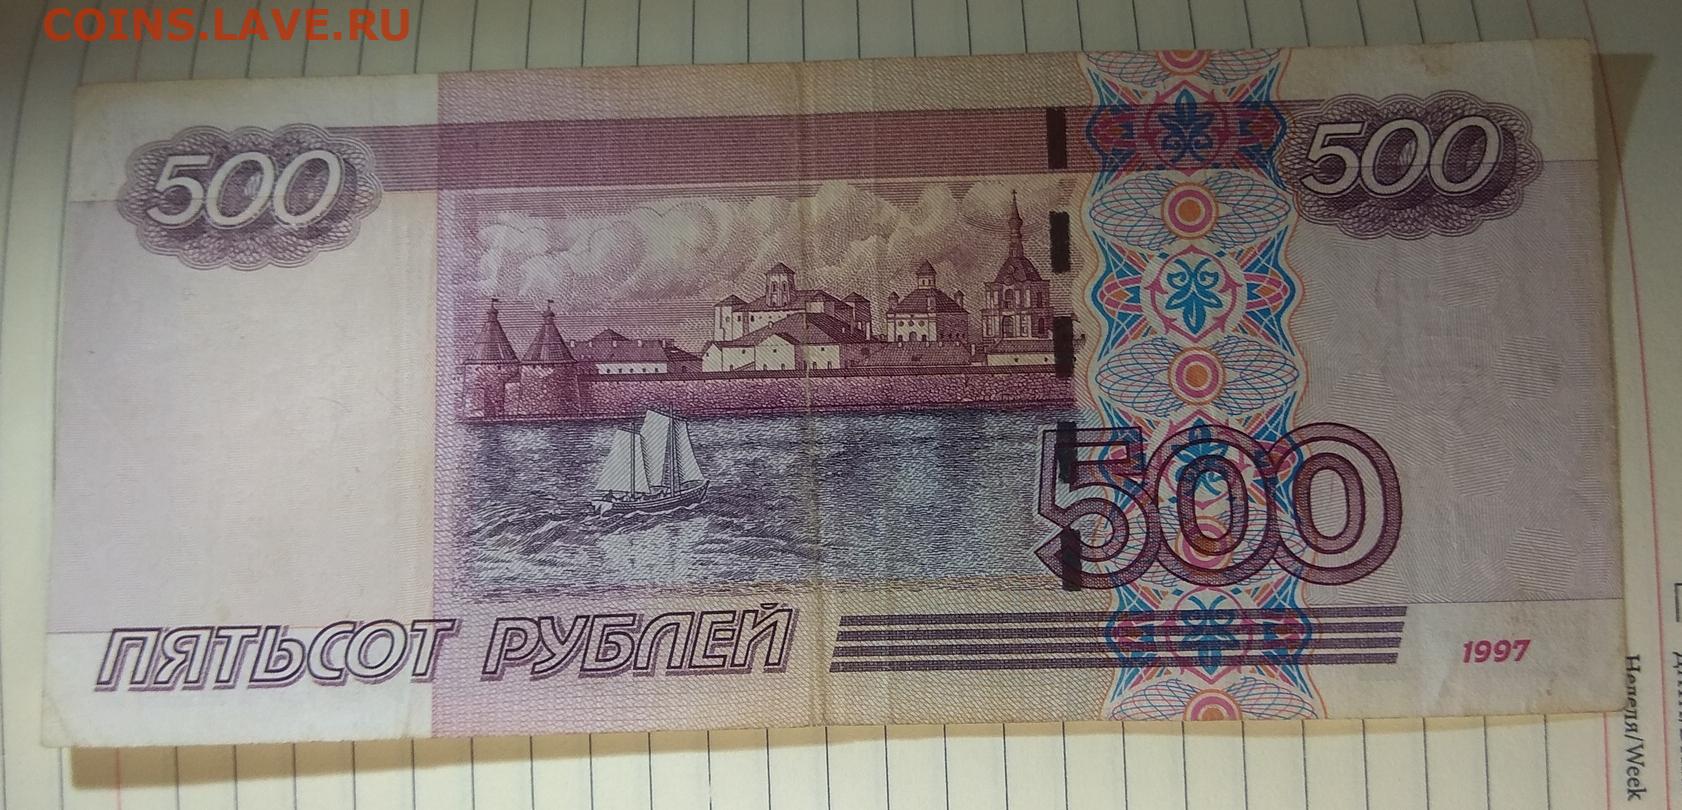 500 рублей 2004. 500 Рублей 2004 года. Купюра 500 рублей 2004 года. 500 Рублей 2004 года модификации. Пятьсот рублей 2004 года.